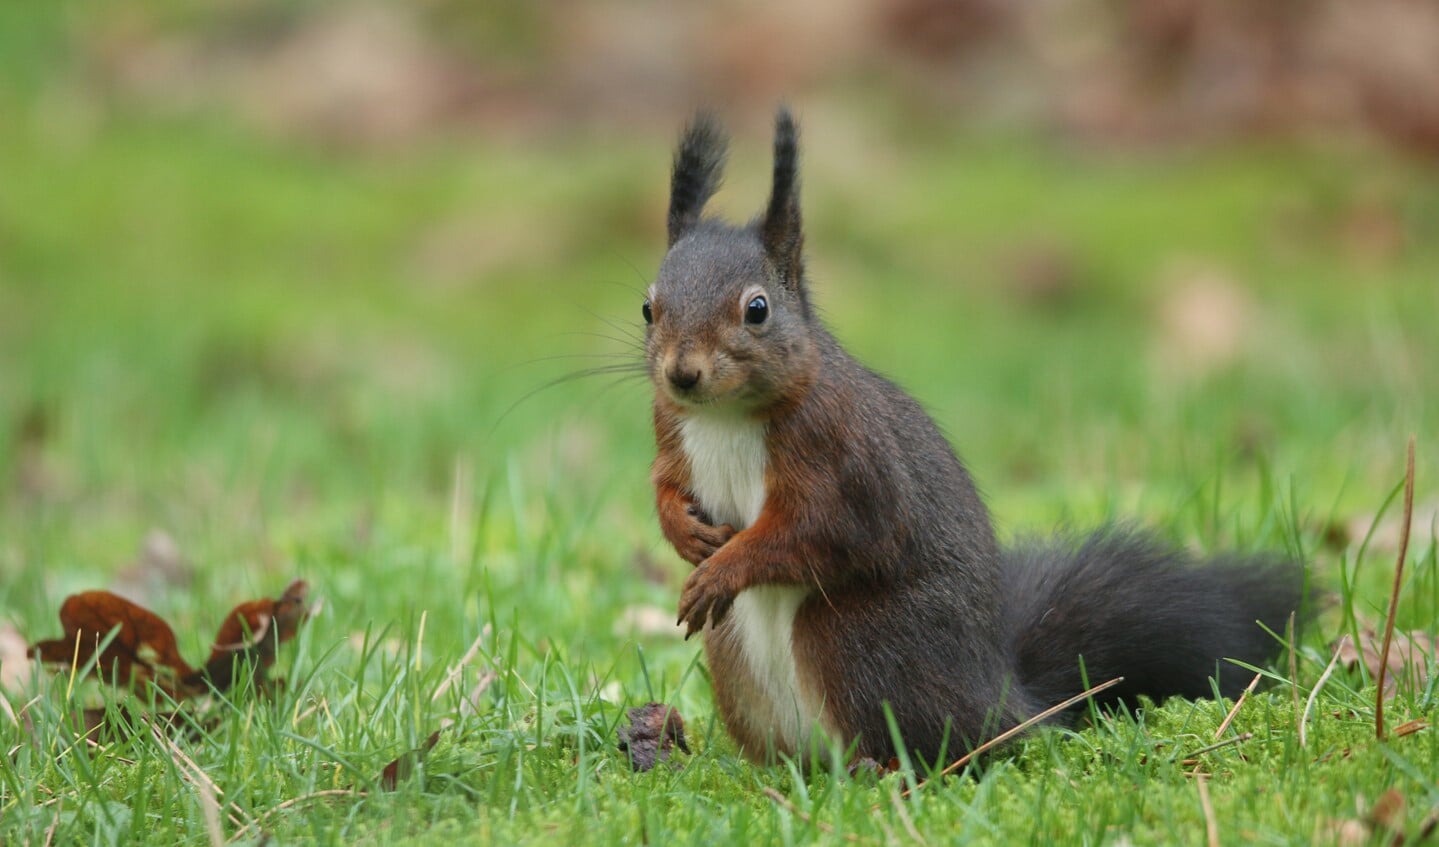 De rode eekhoorn kan donker gekleurd zijn. (Foto: Peter Elfferich)